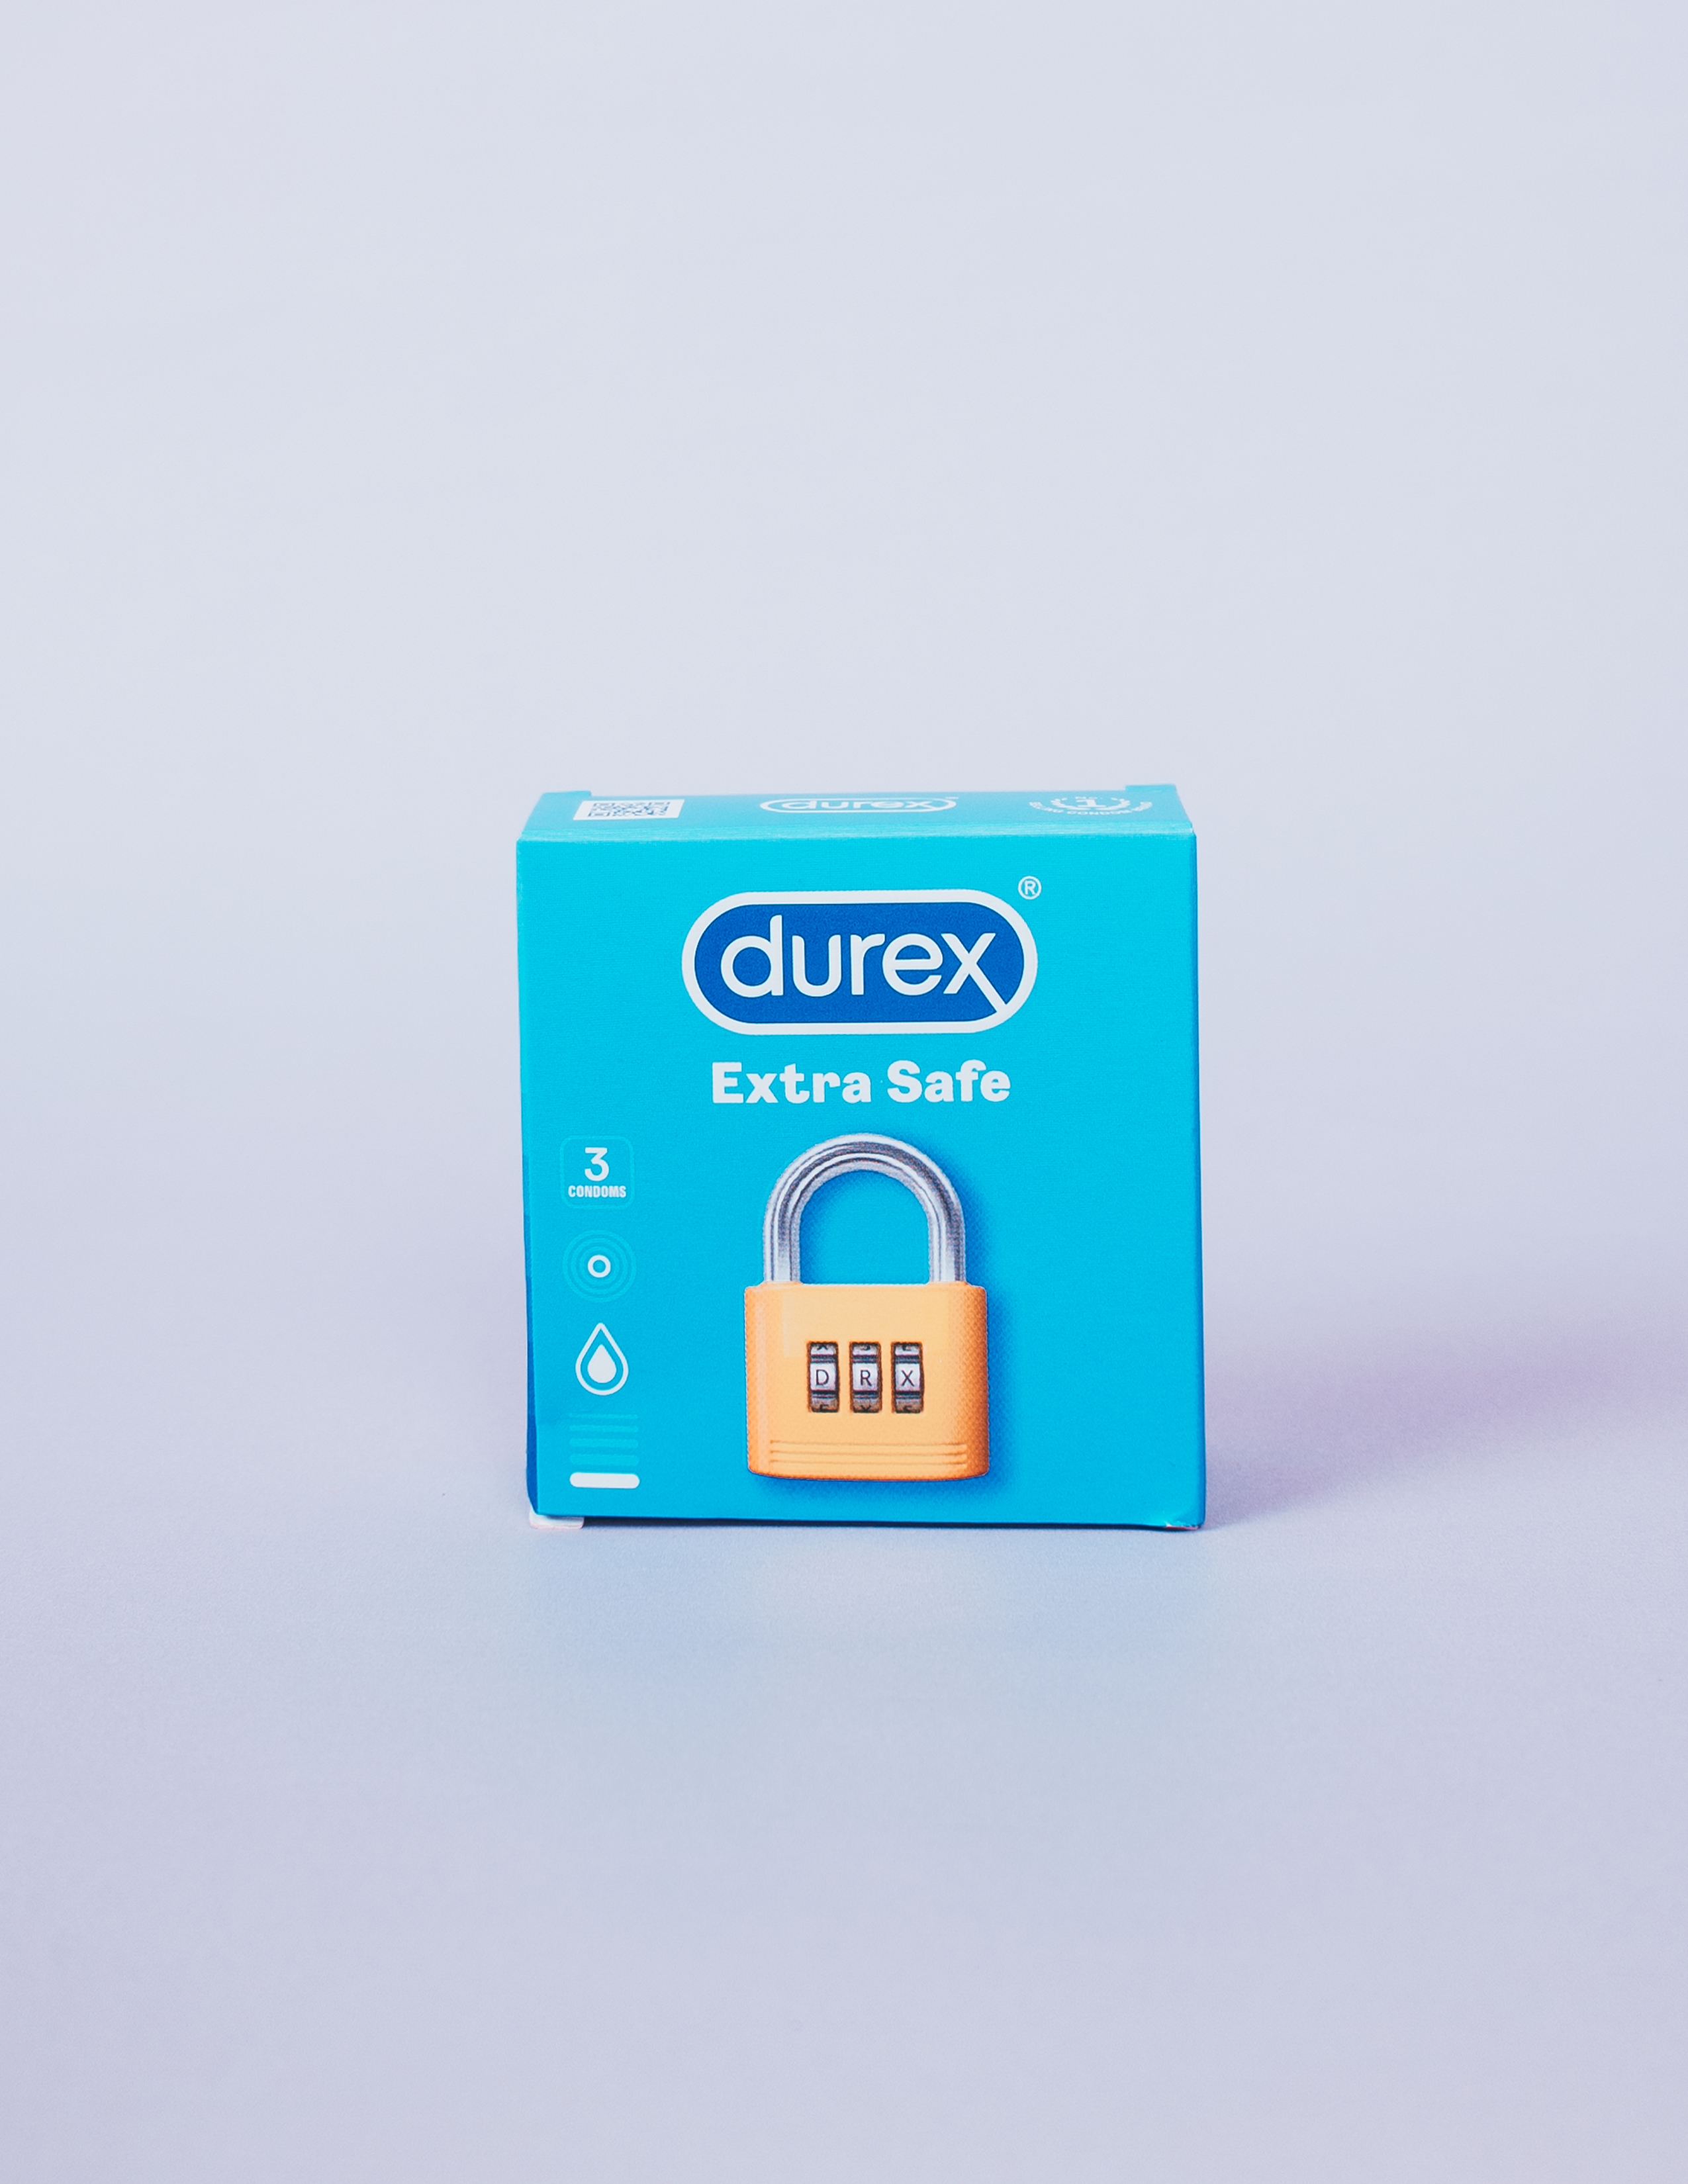 Durex: Extra Safe 3's – Anna